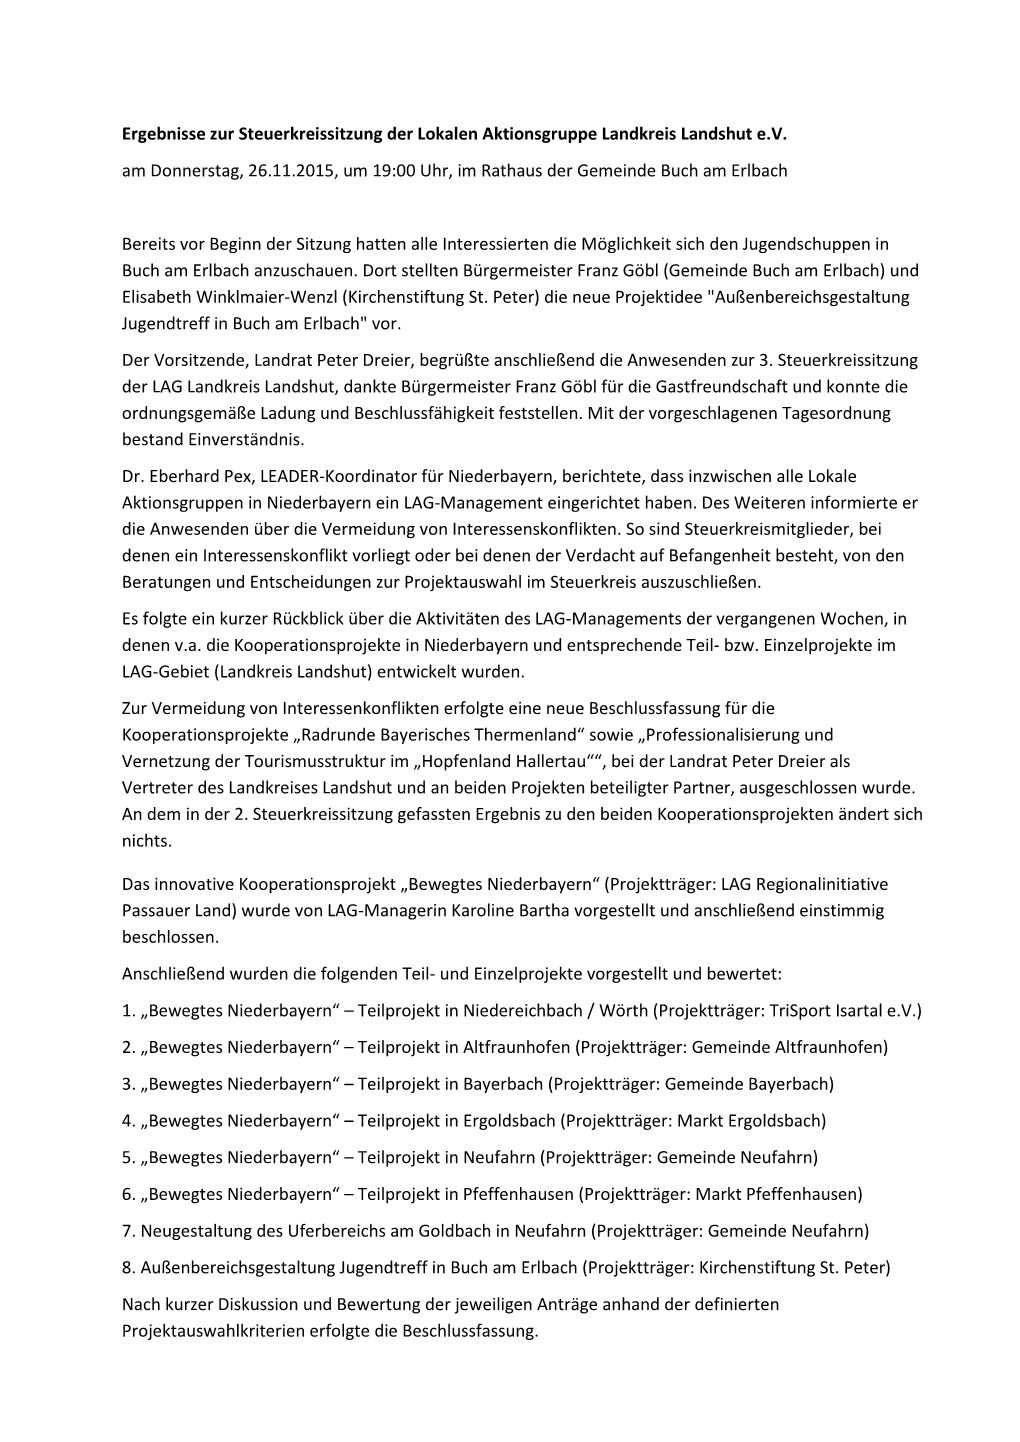 Ergebnisse Zur Steuerkreissitzung Der Lokalen Aktionsgruppe Landkreis Landshut E.V